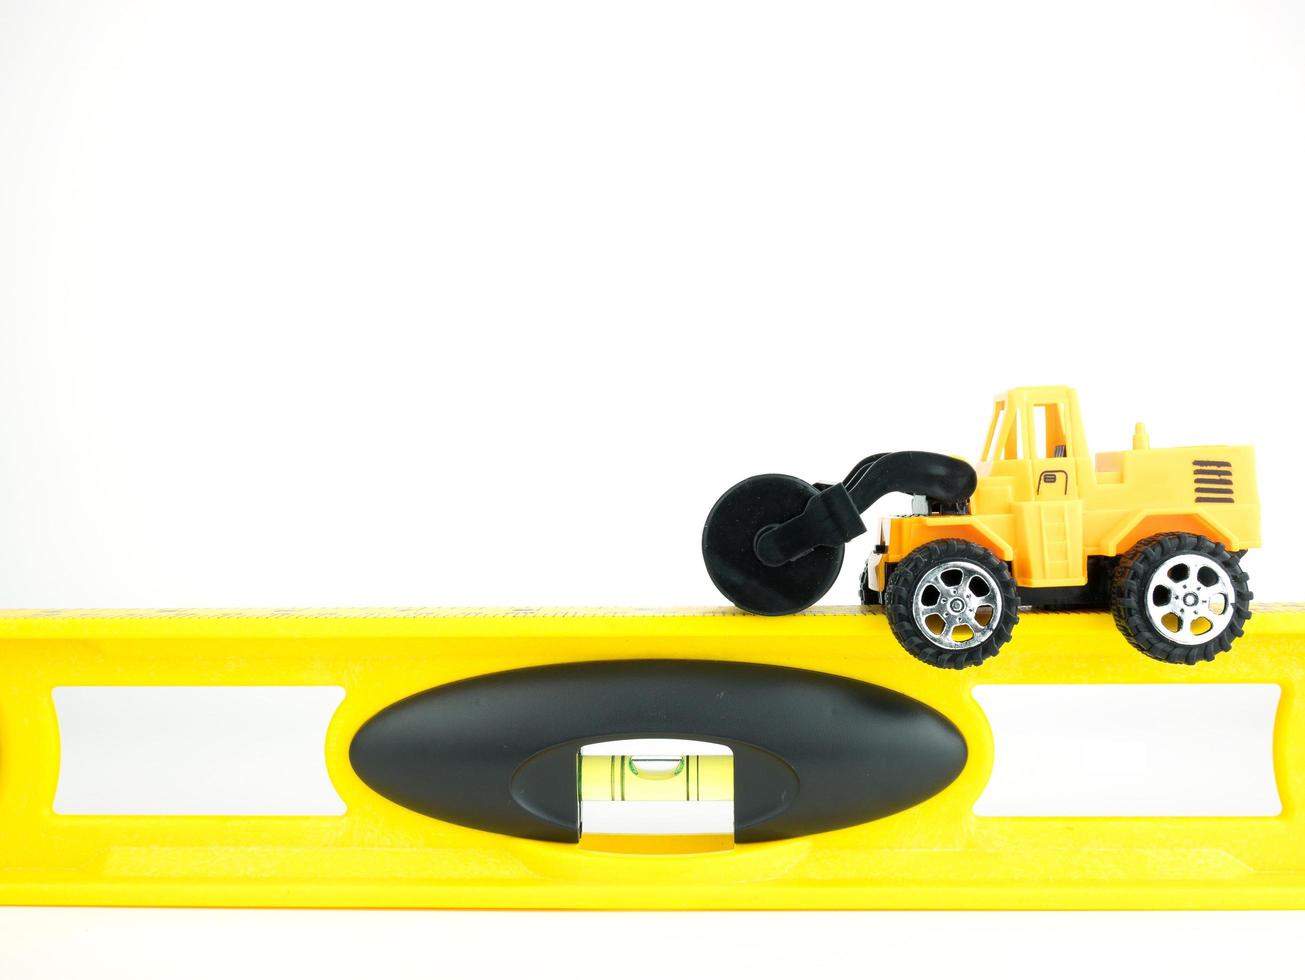 carro de estrada de pressão de brinquedo com nível de construção em fundo branco, conceito de construção de engenharia foto